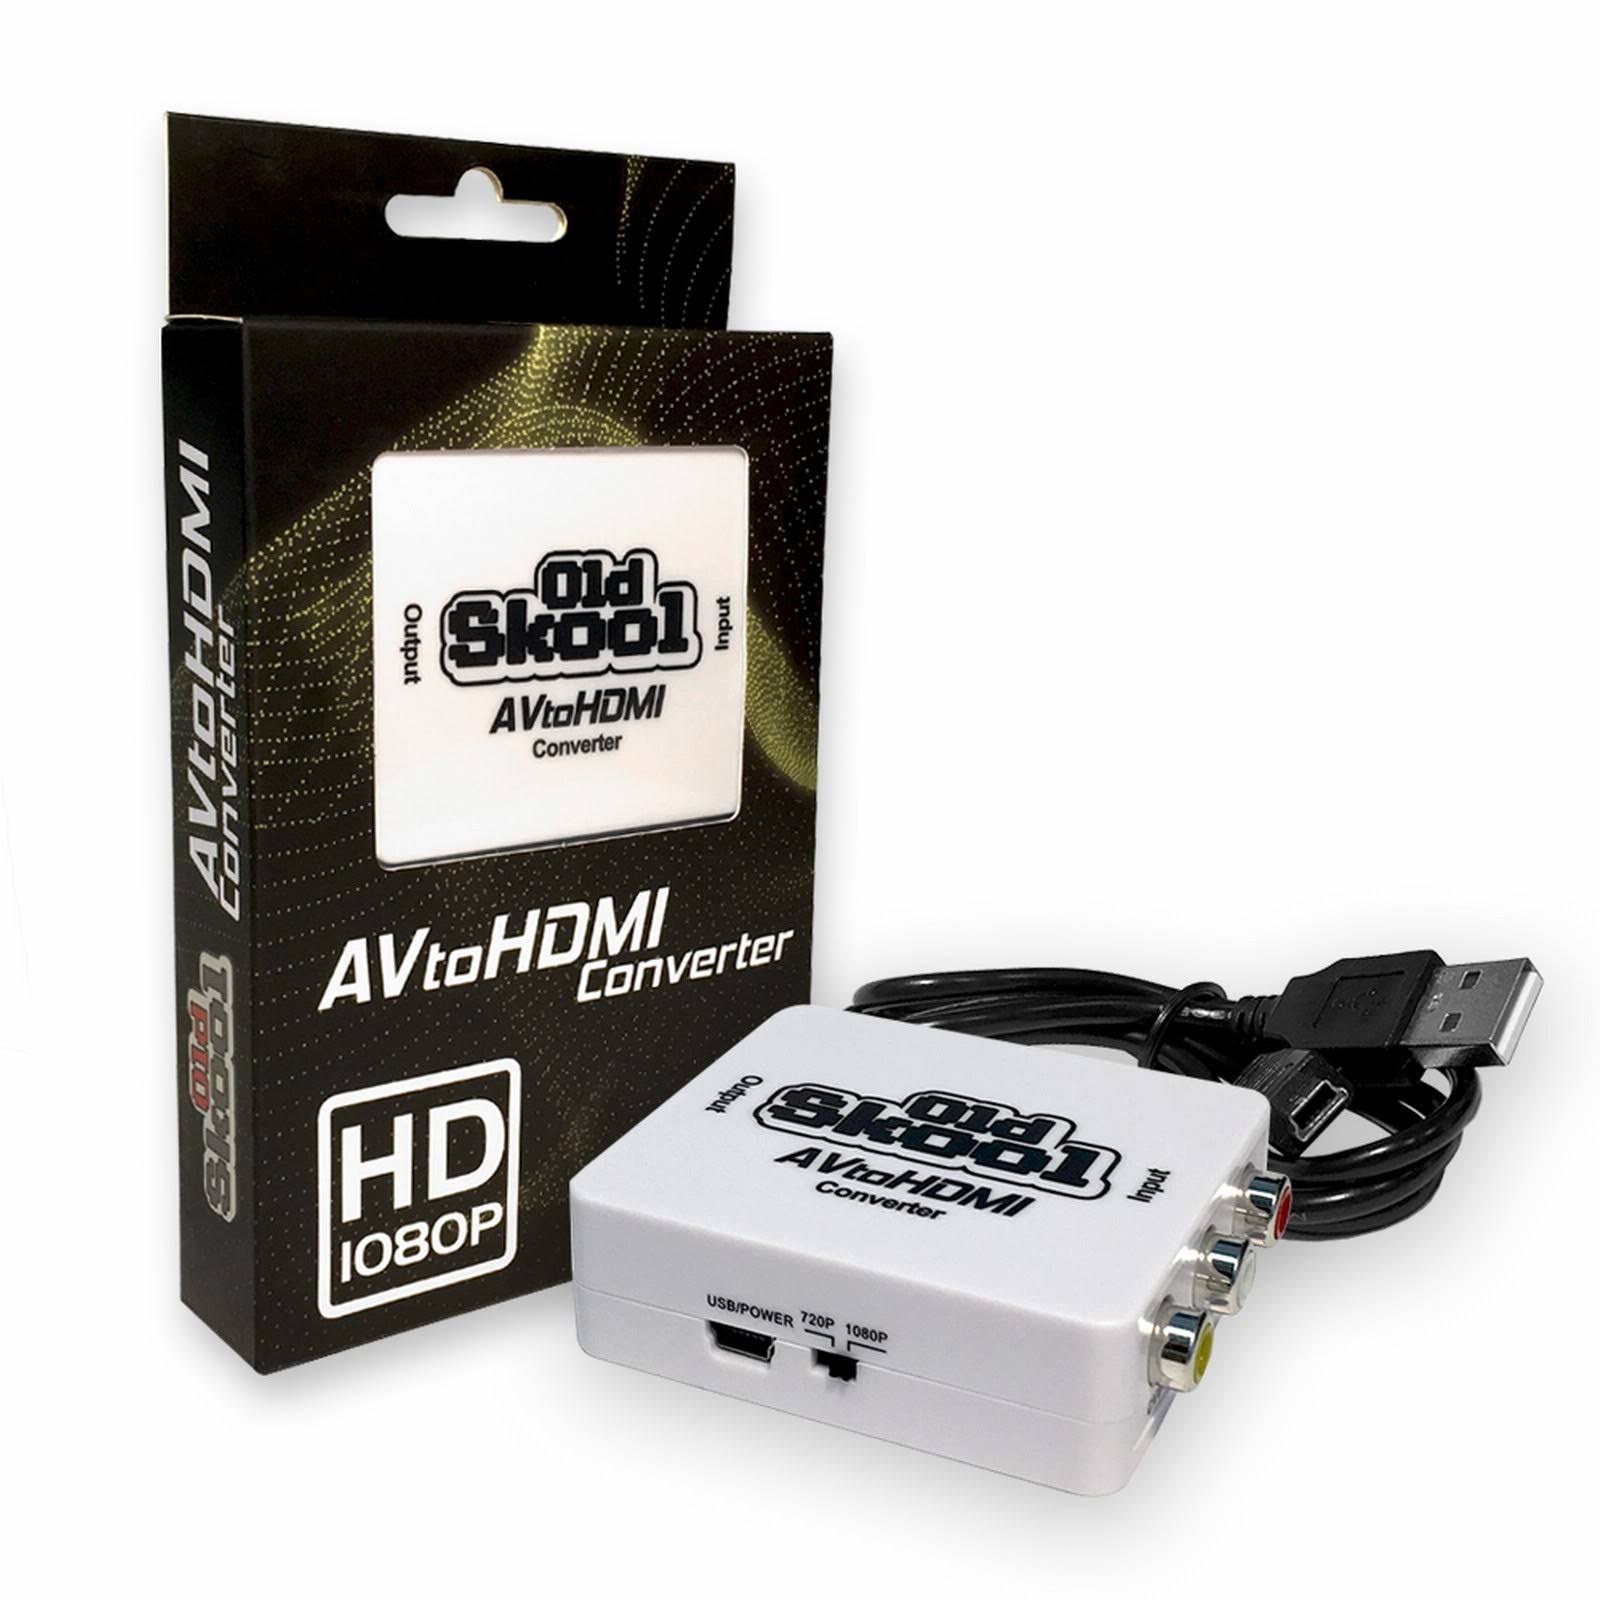 Old Skool AV to HDMI Converter - White